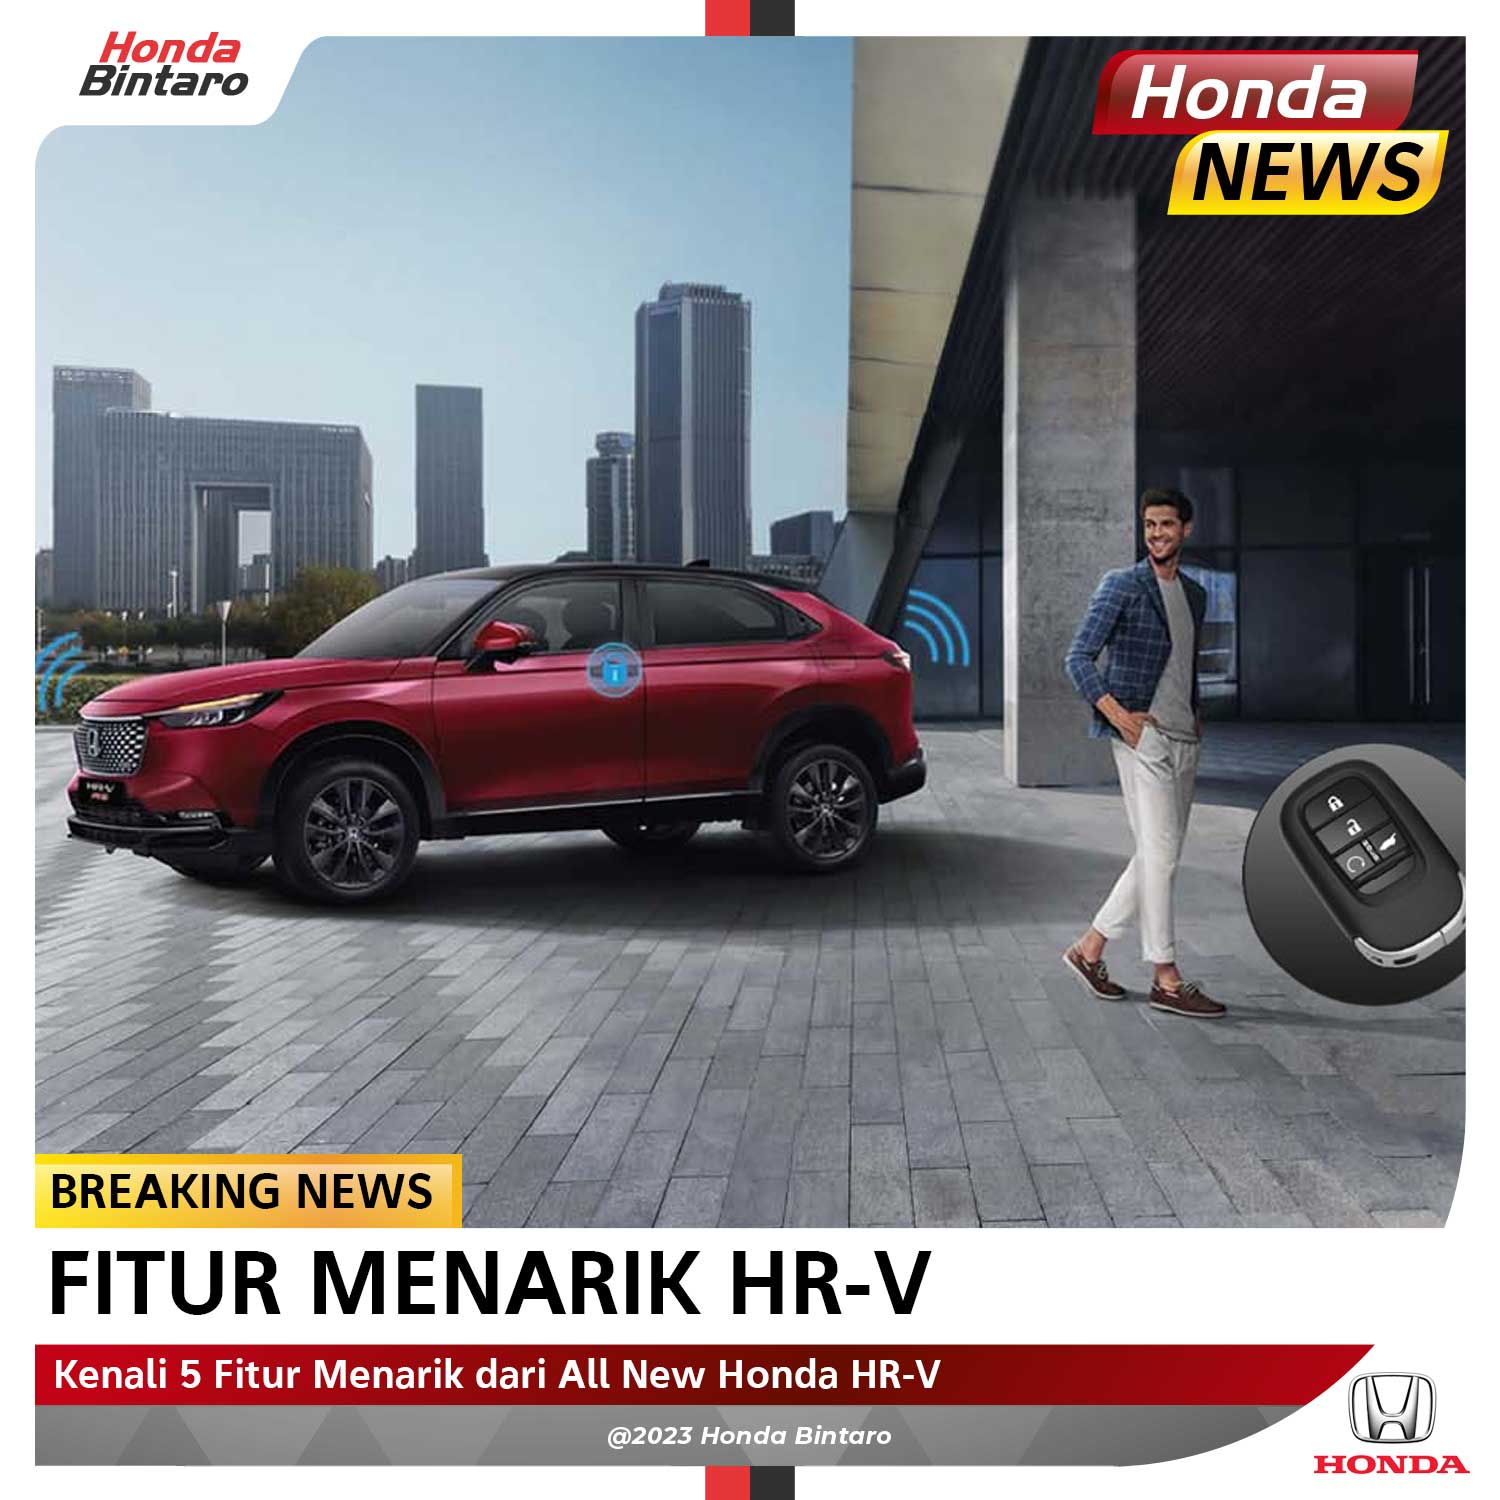 Kenali 5 Fitur Menarik All New Honda HR-V